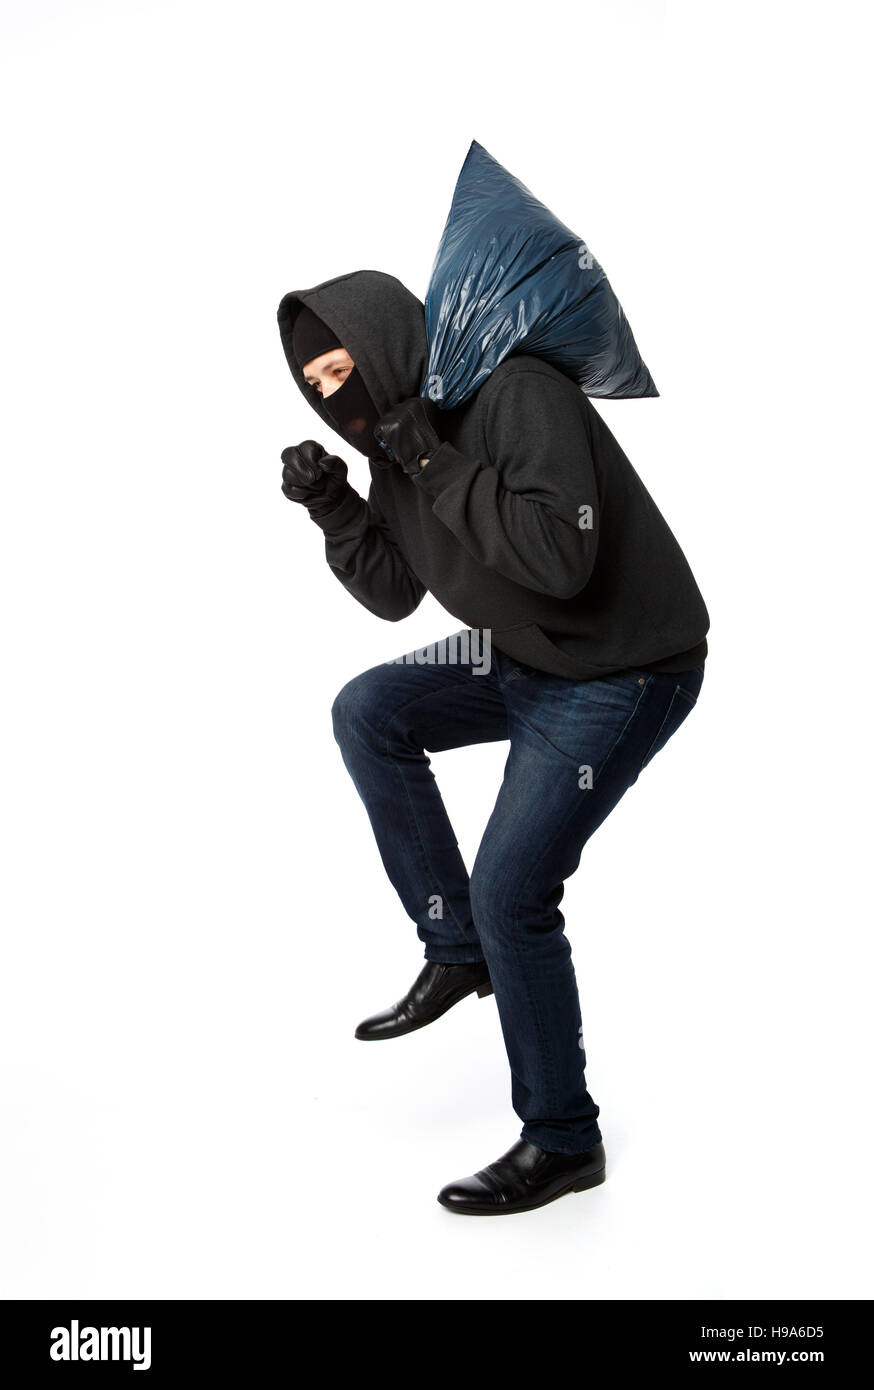 Burglar slinking with large bag Stock Photo